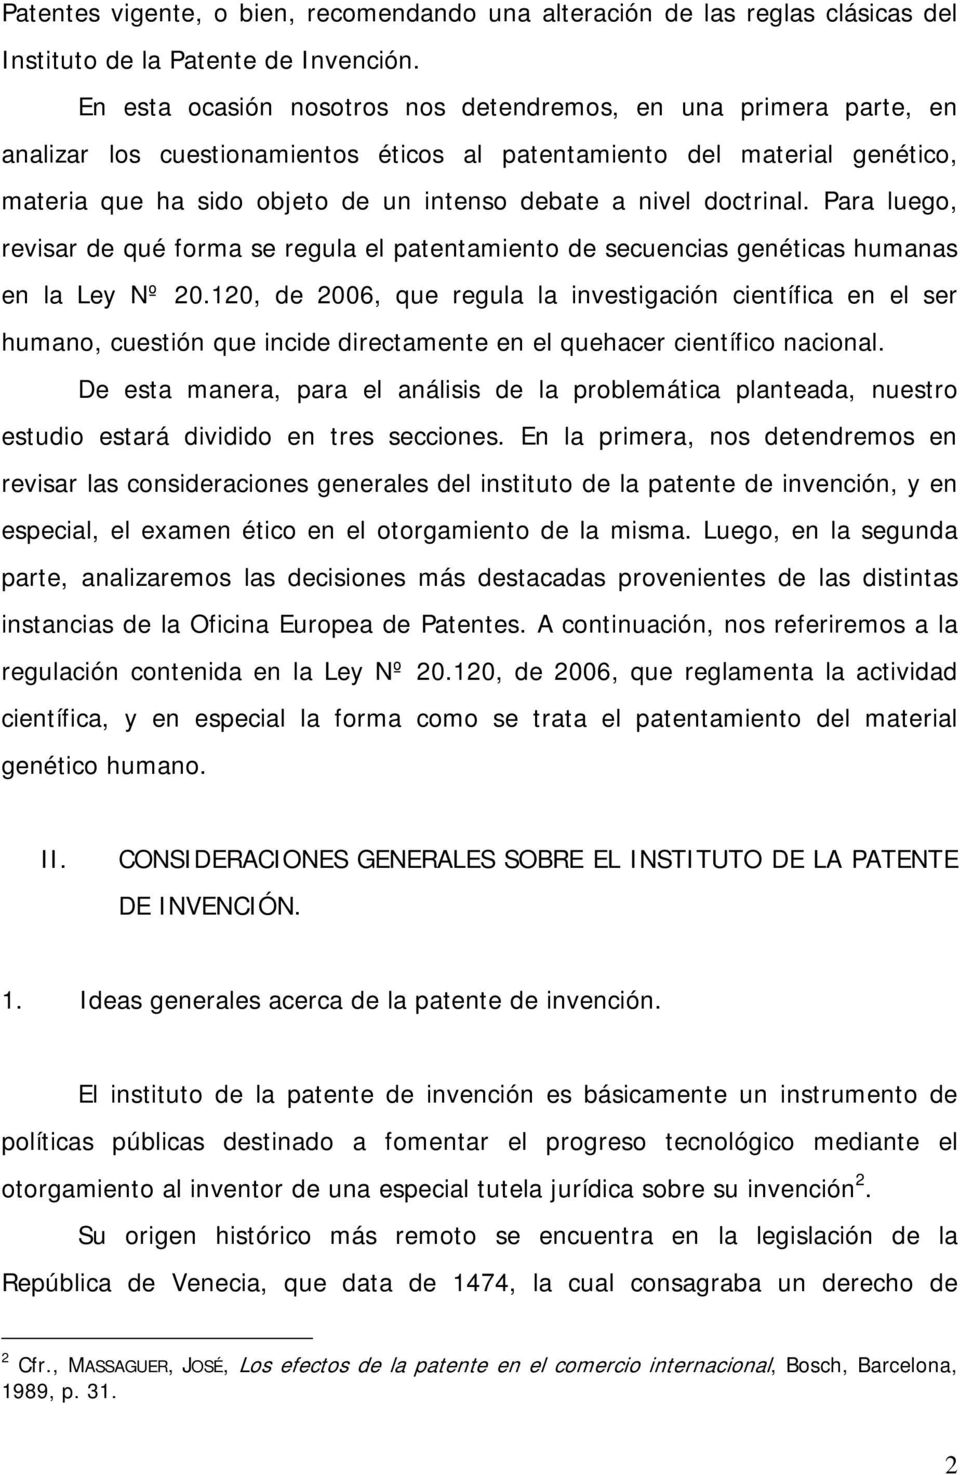 doctrinal. Para luego, revisar de qué forma se regula el patentamiento de secuencias genéticas humanas en la Ley Nº 20.